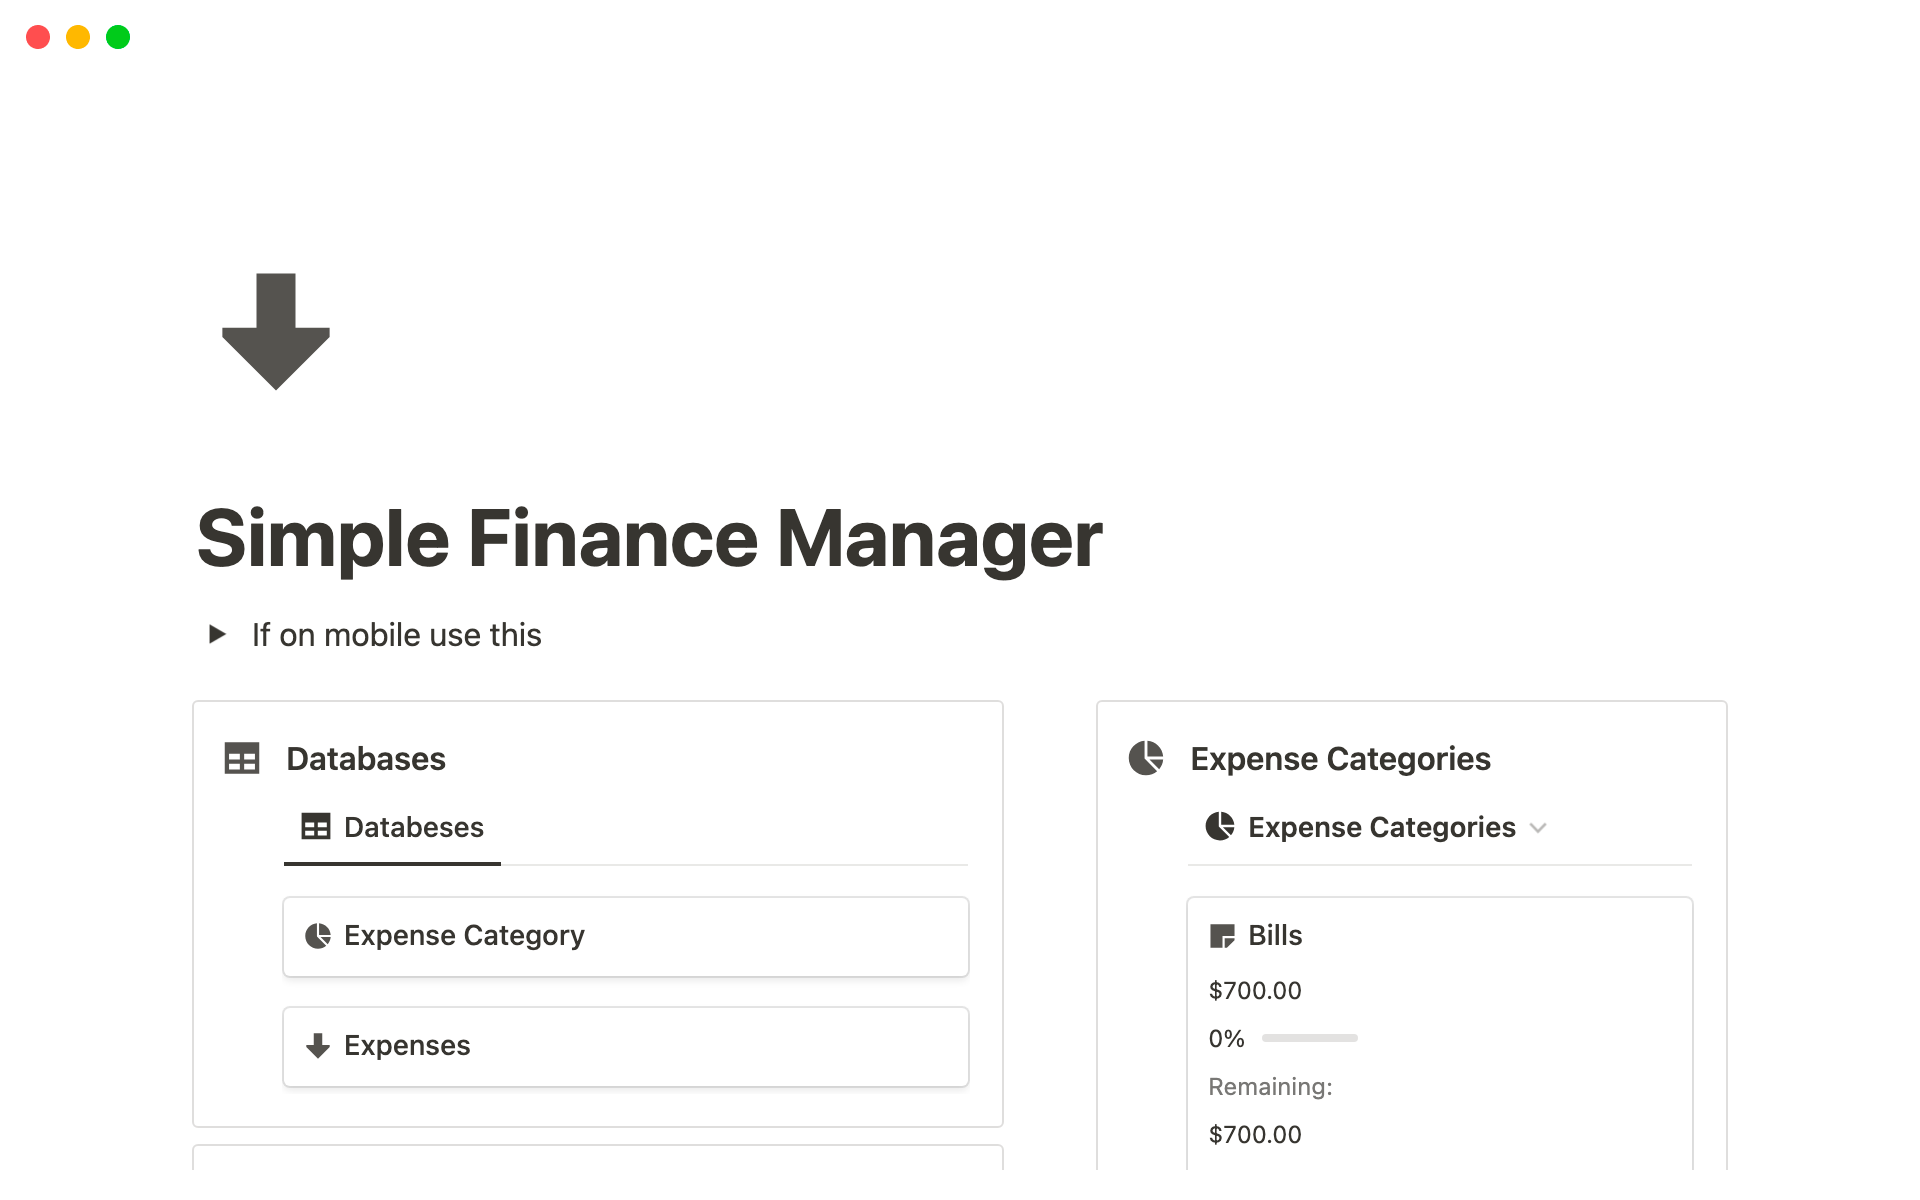 Vista previa de una plantilla para Simple Finance Tracker